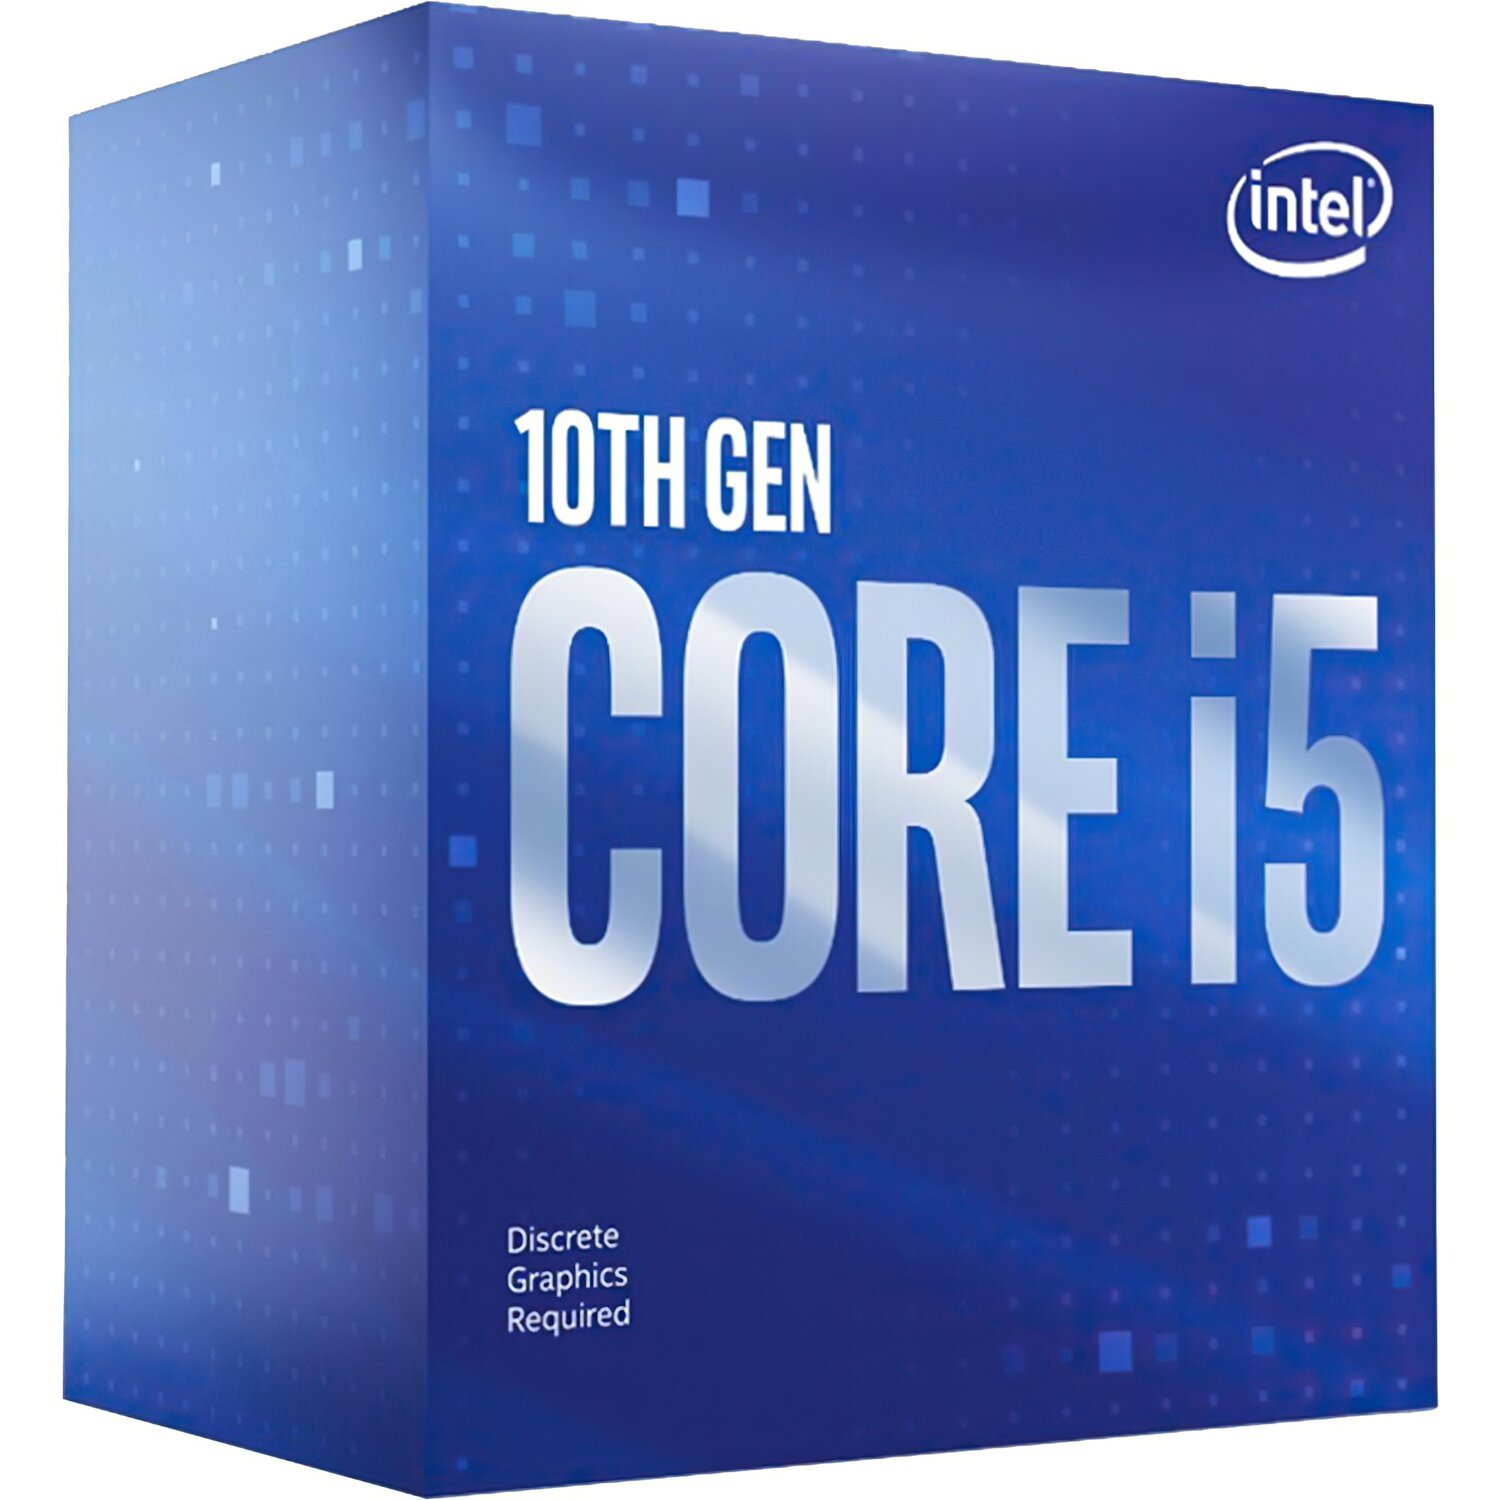 Процессор Intel Core i5-10400 6/12 2.9GHz 12M LGA1200 65W box (BX8070110400) фото 